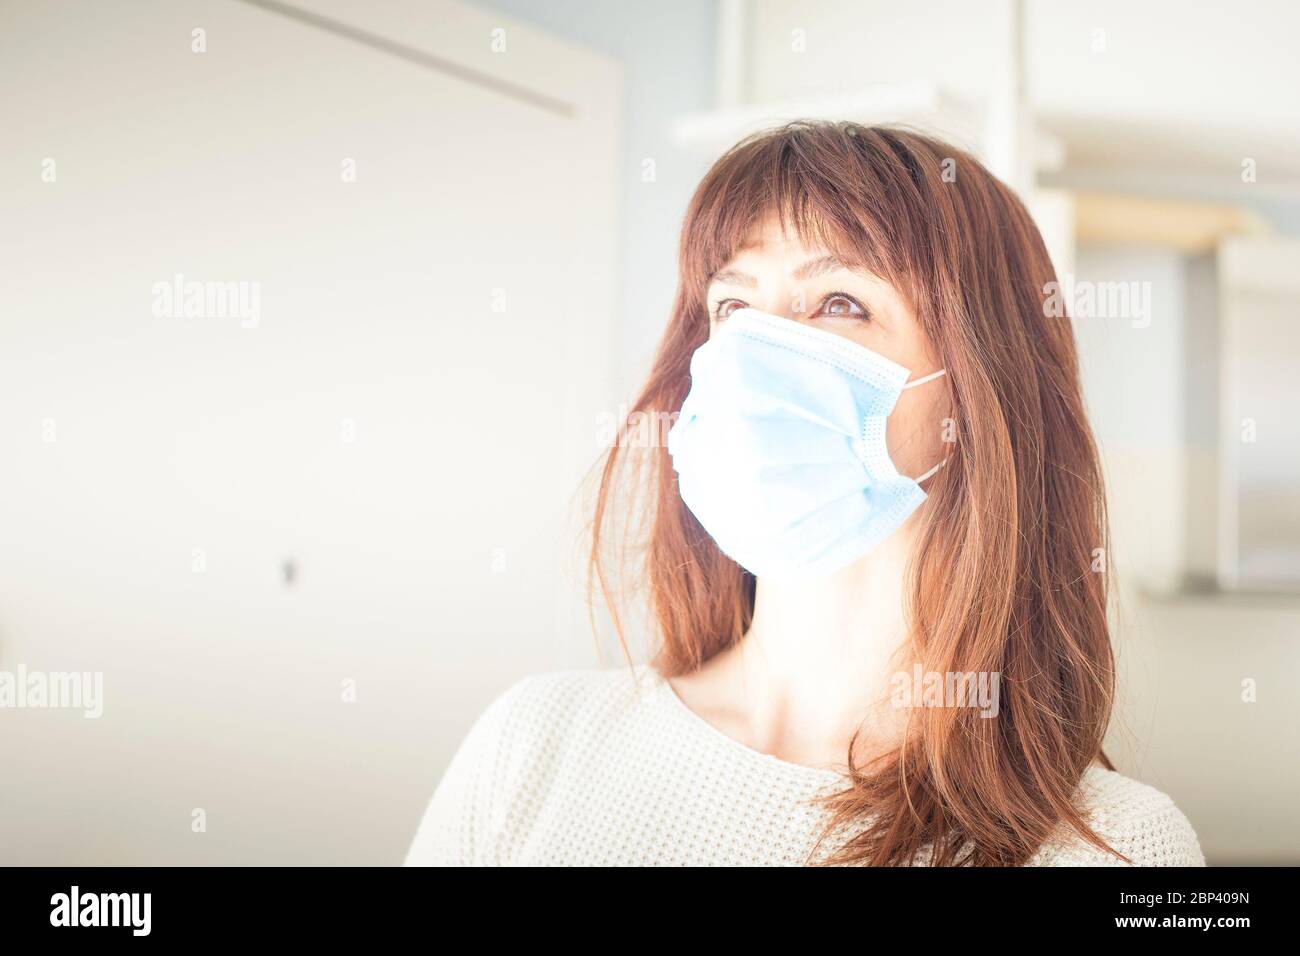 Femme caucasienne attirante avec de longs cheveux et des langes, portant un masque chirurgical bleu pendant une pandémie de covid-19 ou de coronavirus. Copier l'espace sur la gauche. Banque D'Images